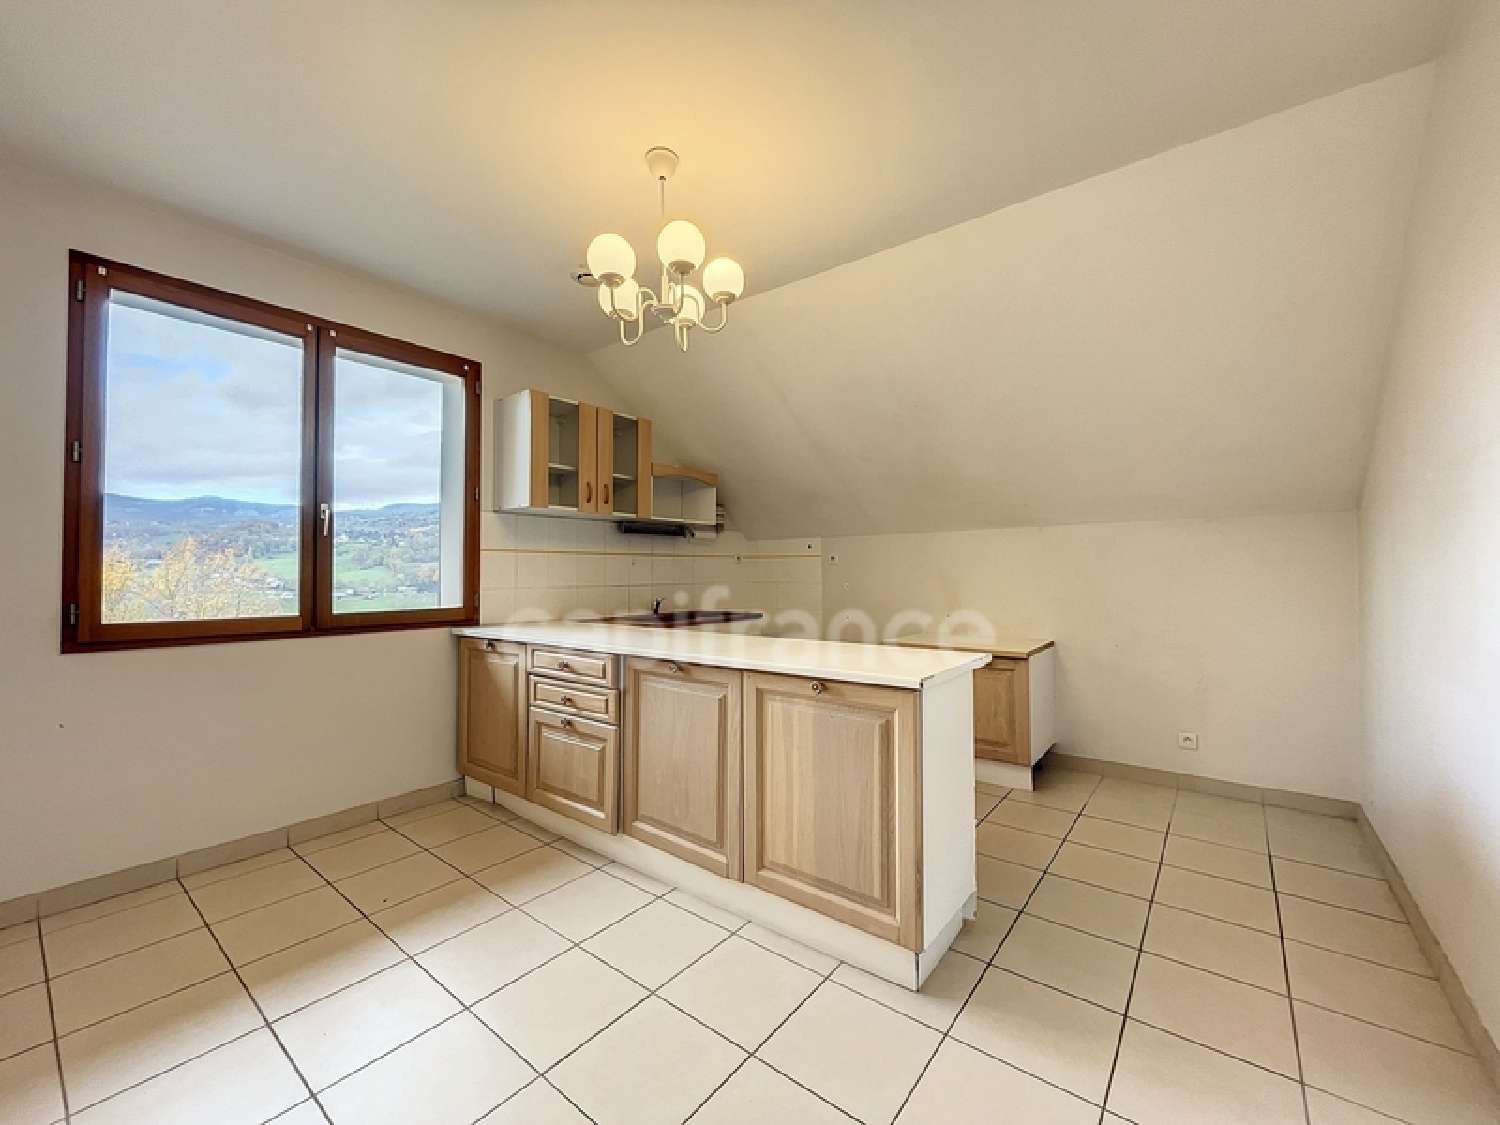  for sale apartment Vimines Savoie 4